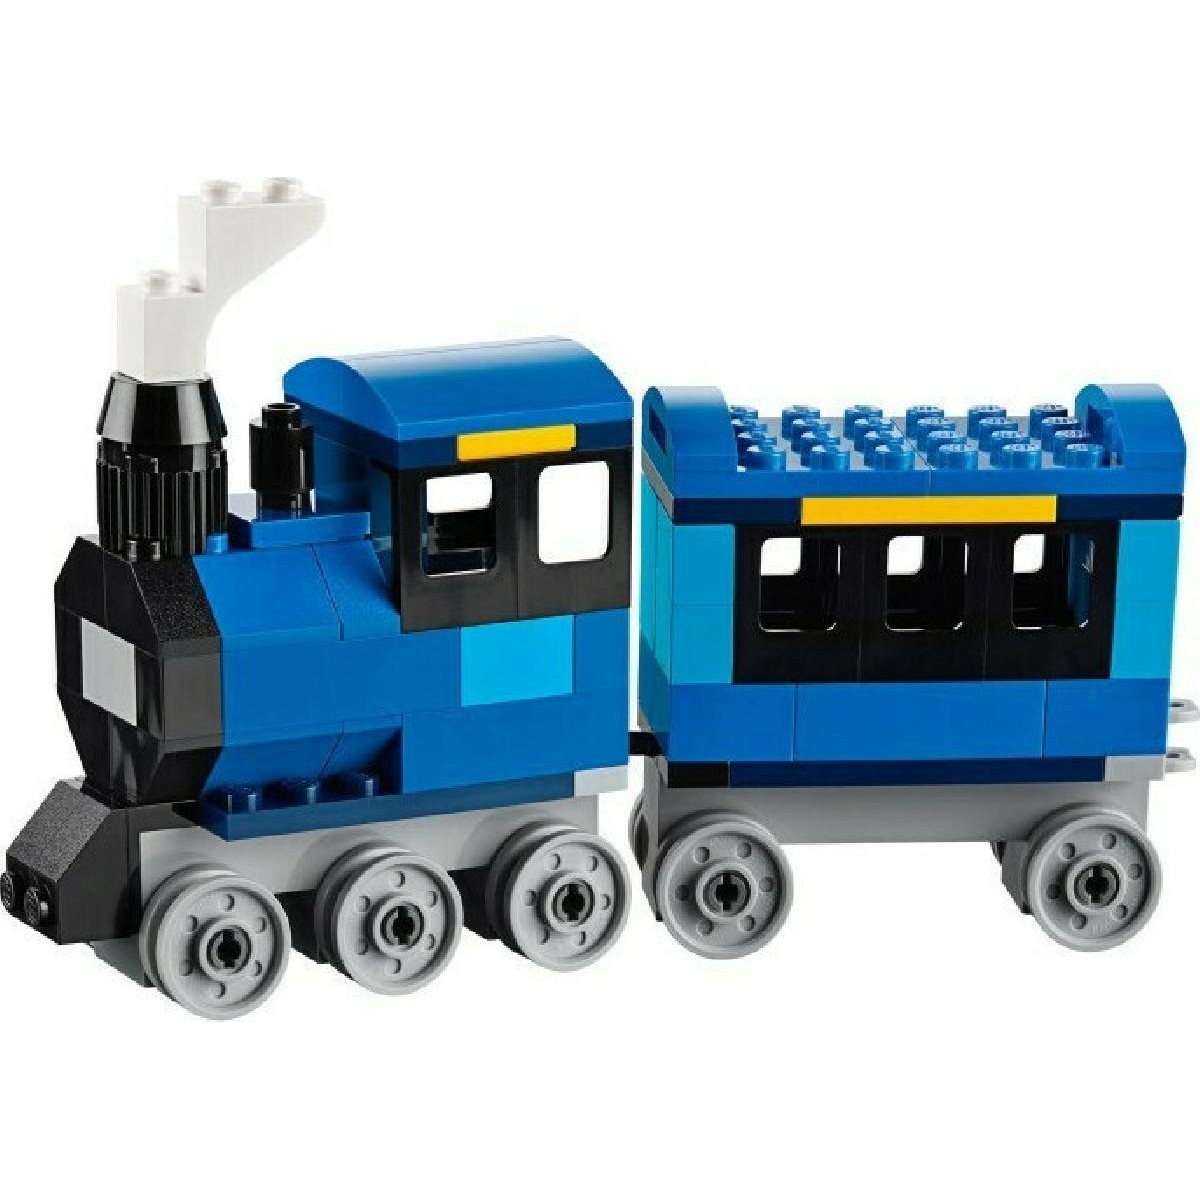 LEGO® Classic Medium Creative Brick Box (10696)